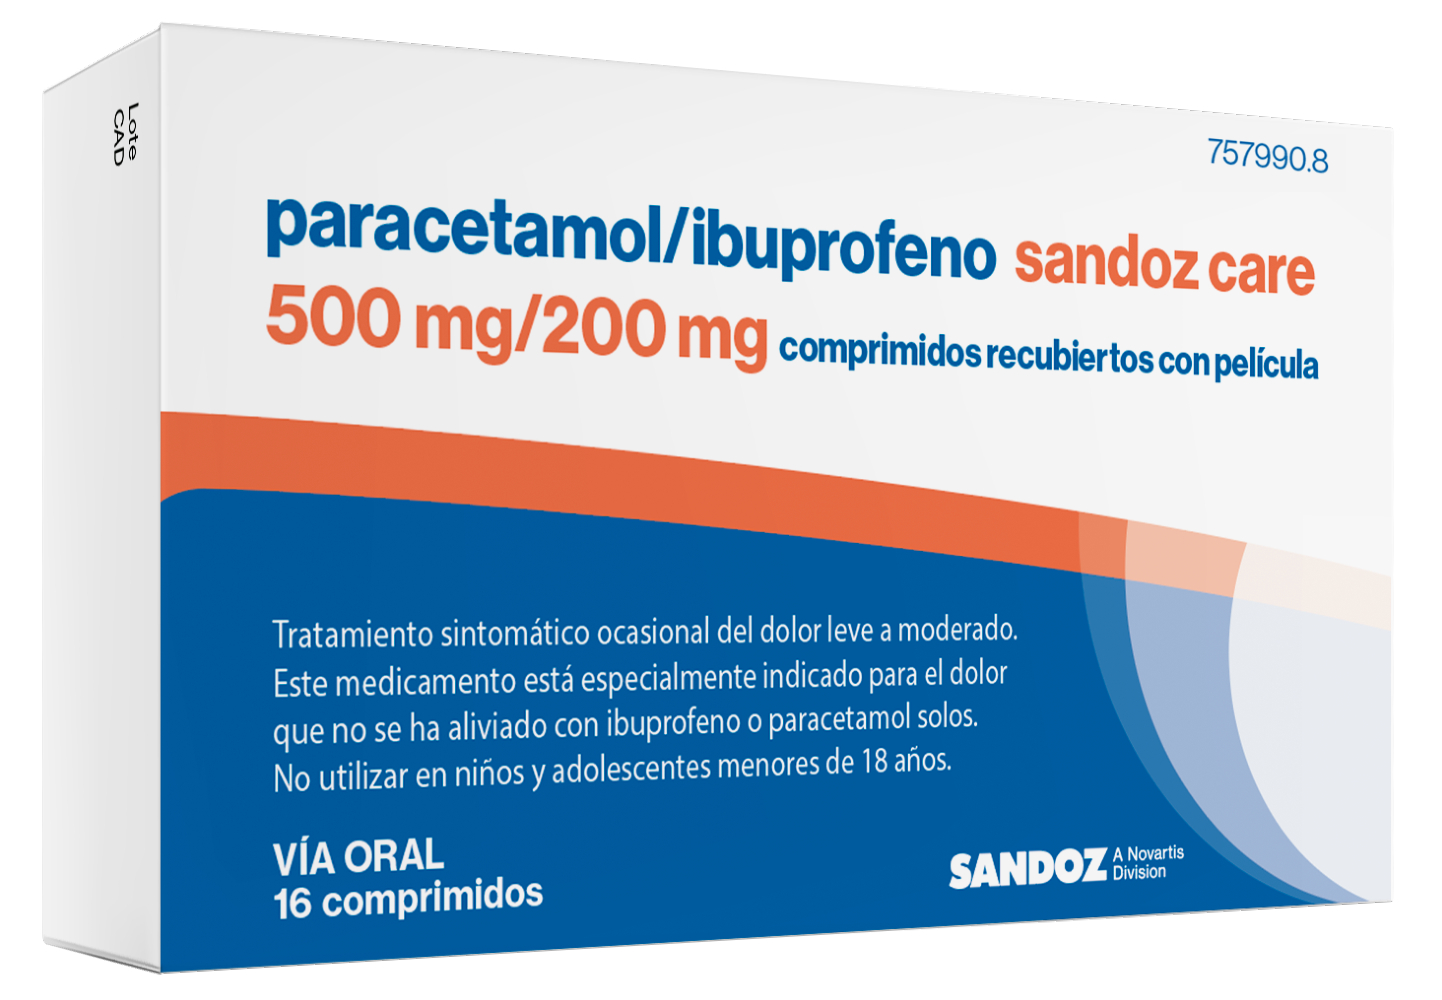 Sandoz lanza Paracetamol/Ibuprofeno Sandoz Care 500mg/200 mg, el primer  medicamento sin receta médica que combina paracetamol e ibuprofeno a esta  dosis